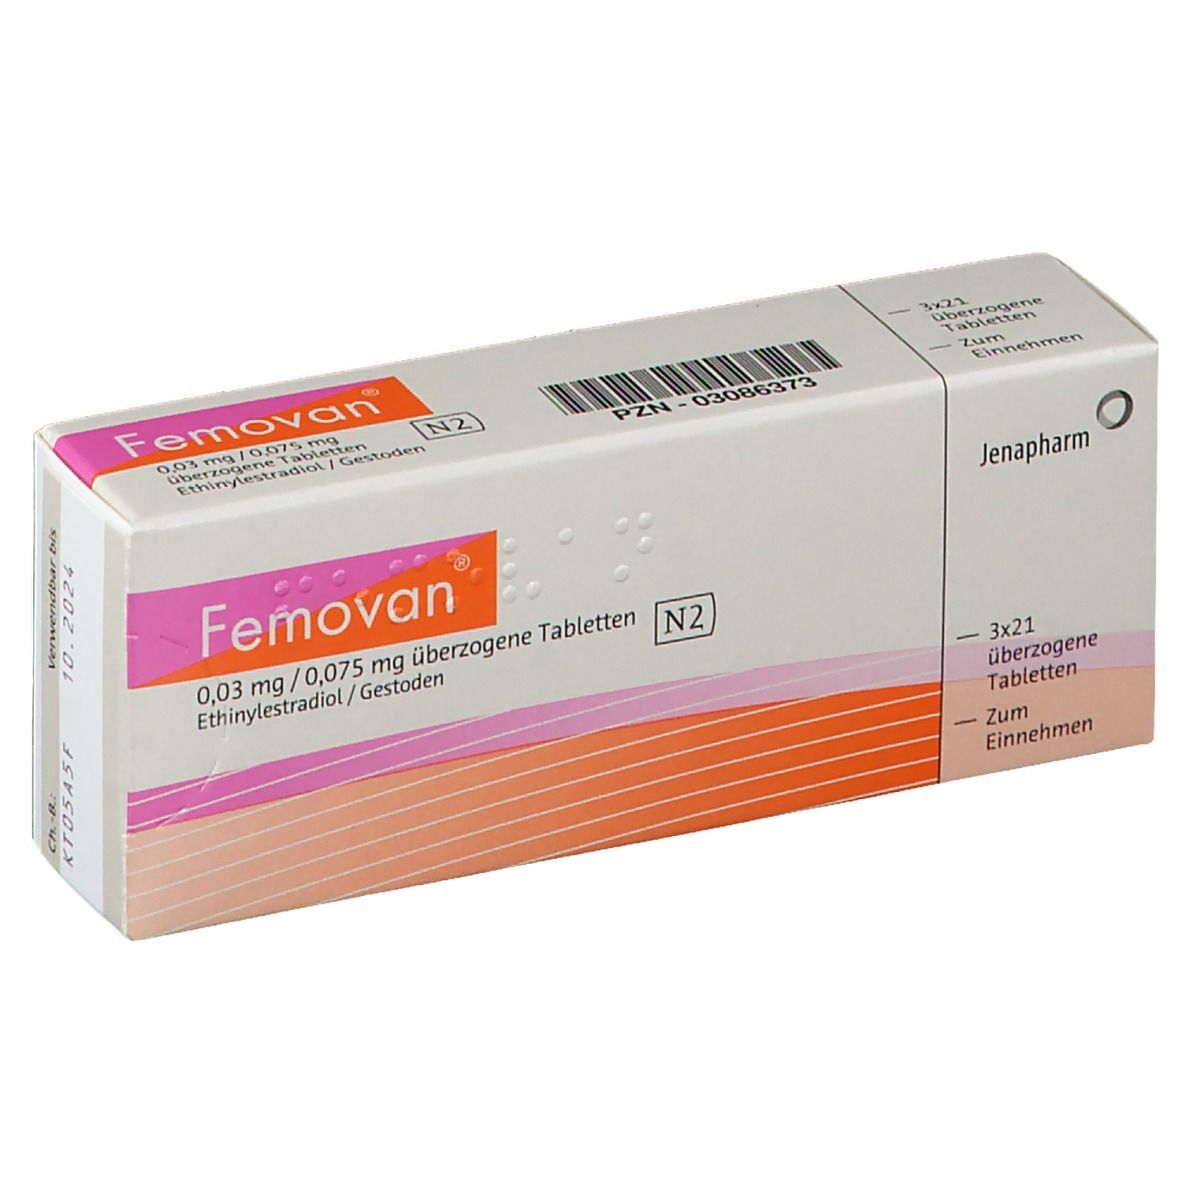 Femovan® 0,03 mg/0,075 mg